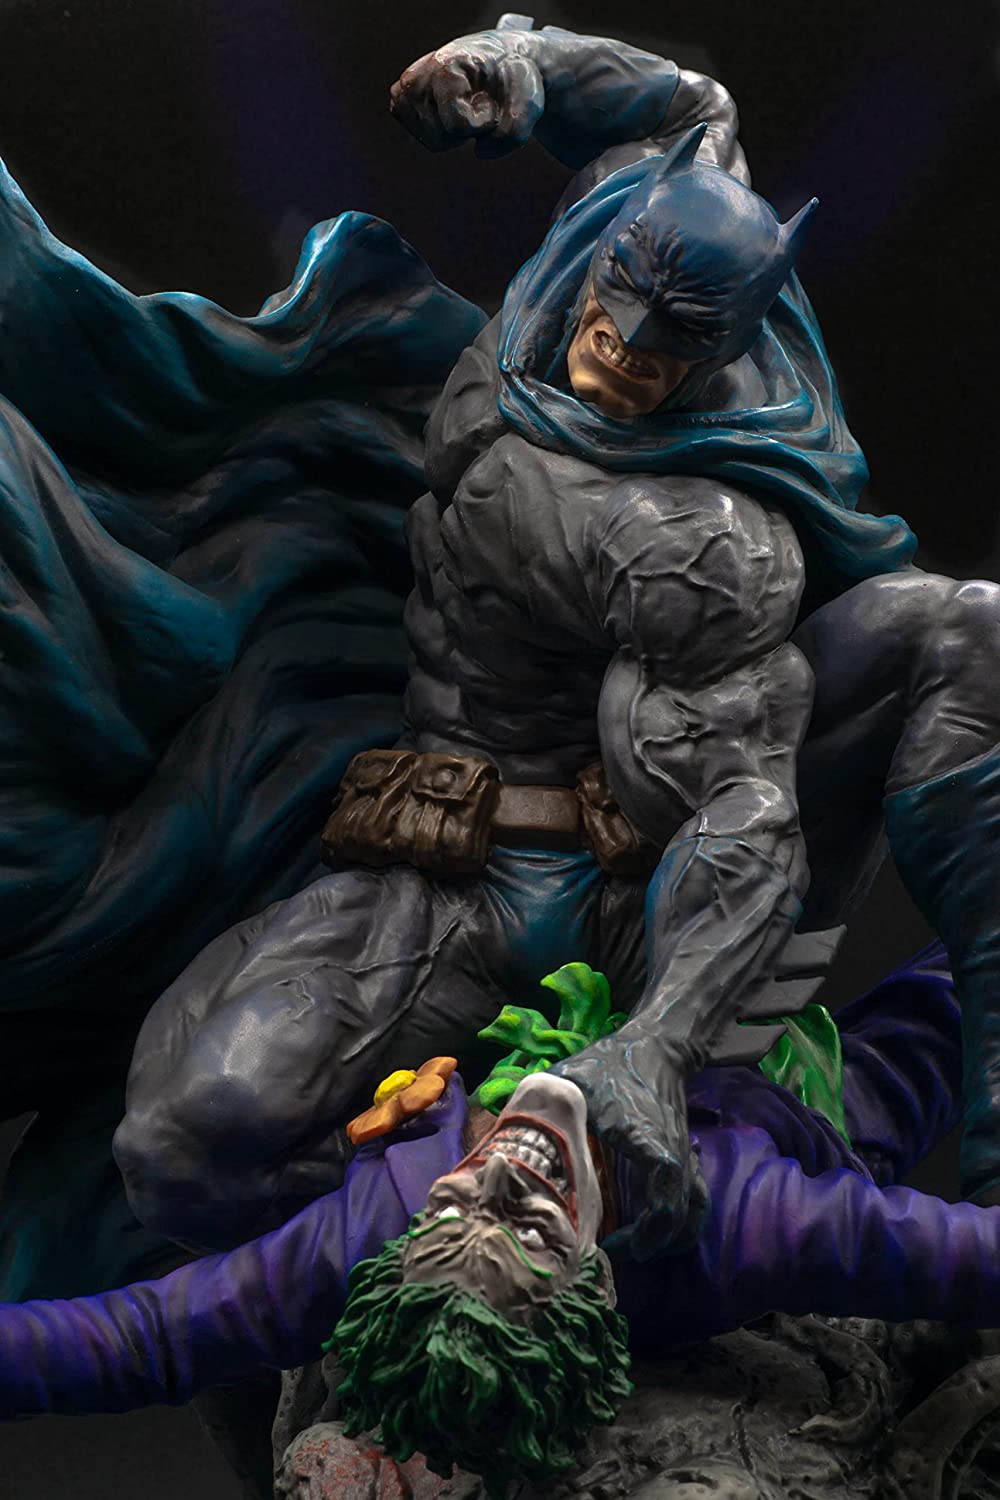 Kotobukiya Zerostar Studios Batman vs Joker Sculpt Master SeriesSculpt Master Series